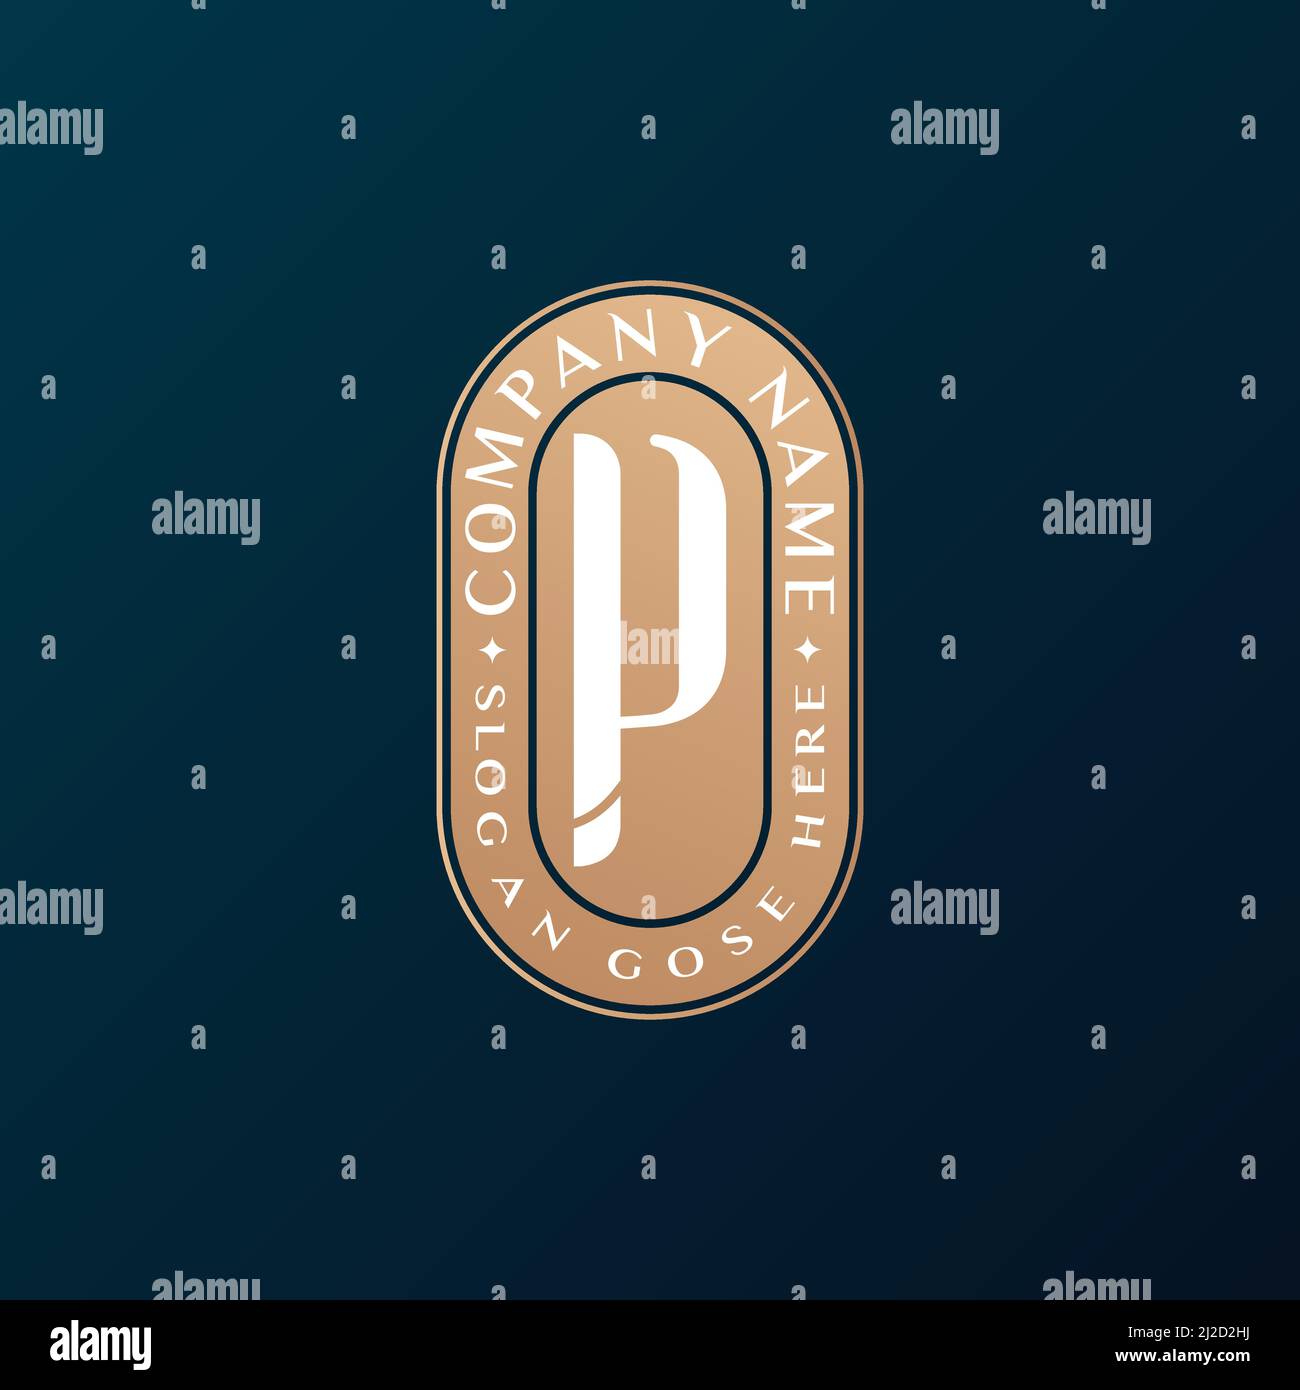 Abstrait Emblem Premium luxe identité d'entreprise élégante lettre P logo design Illustration de Vecteur